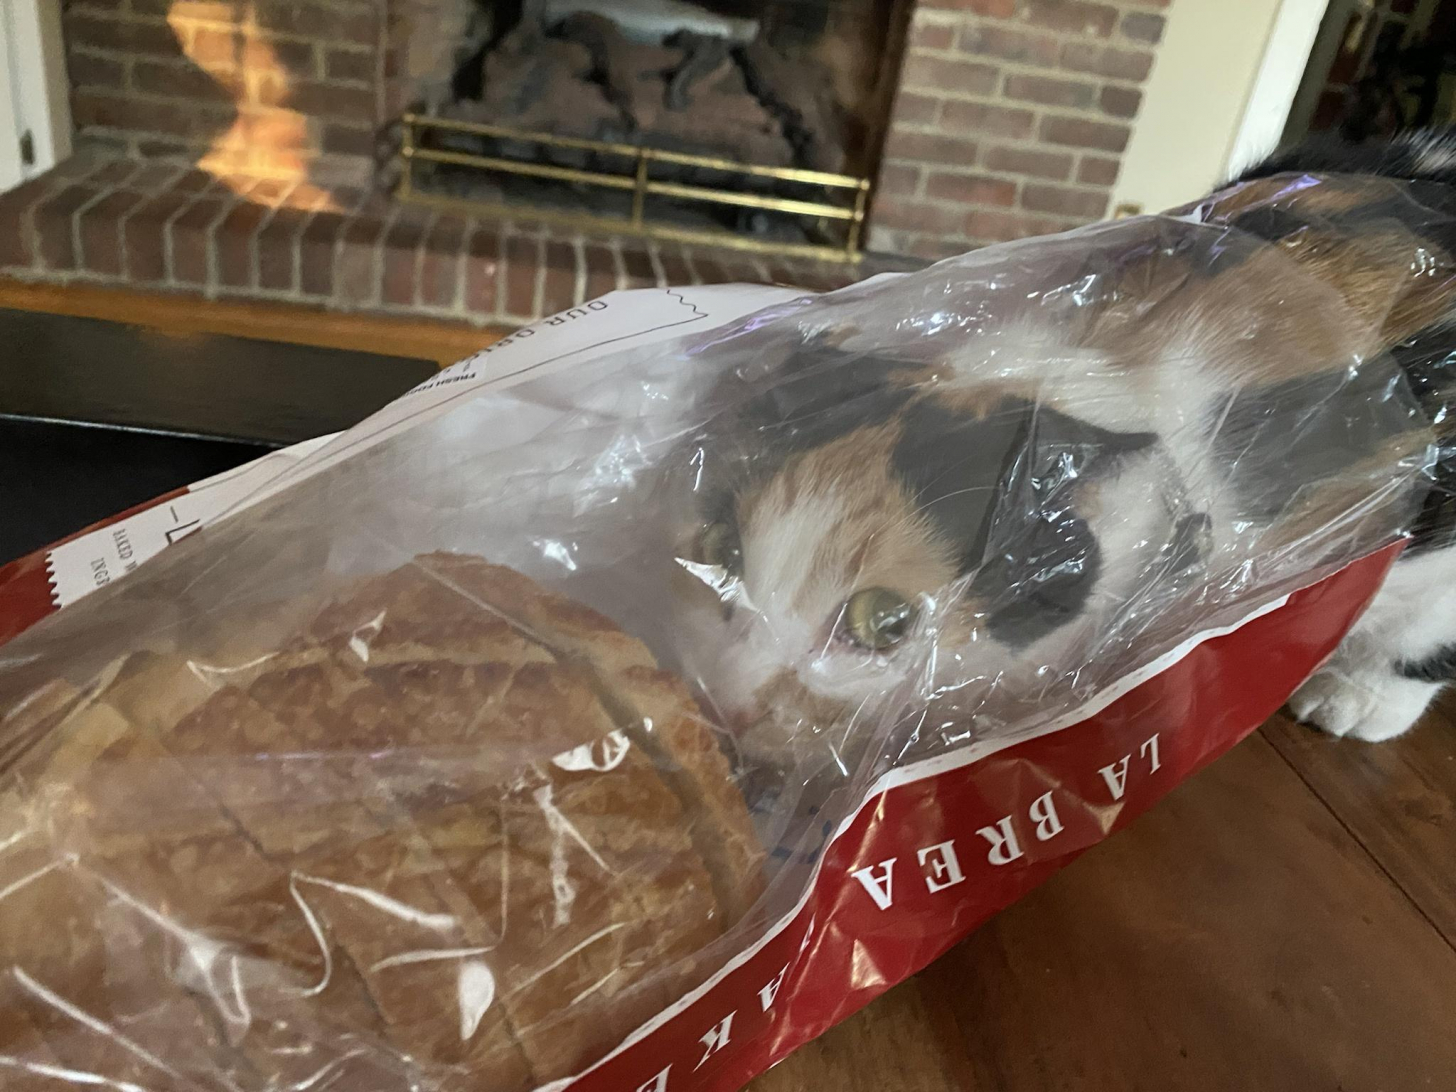 caught bread-handed